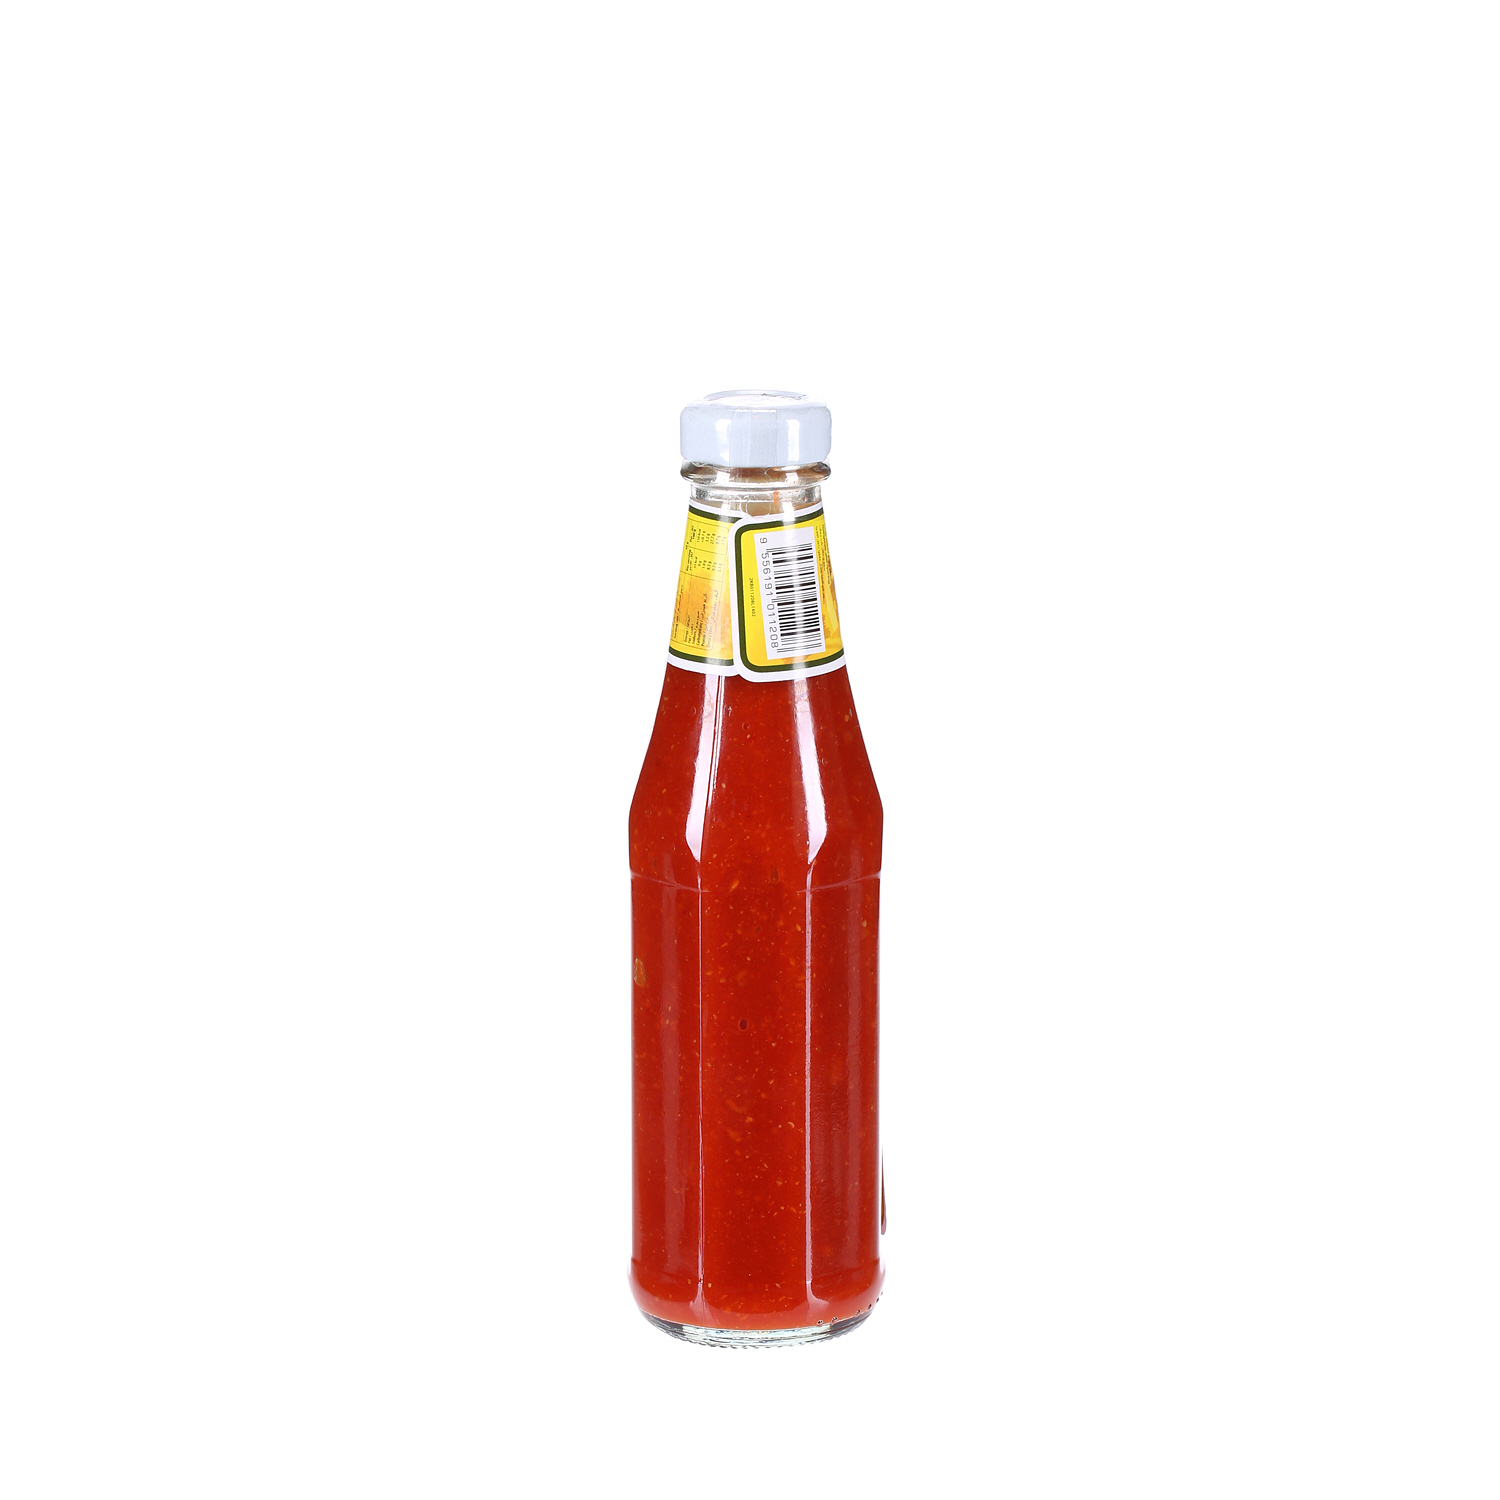 Kimball Chilli Garlic Sauce 325gm